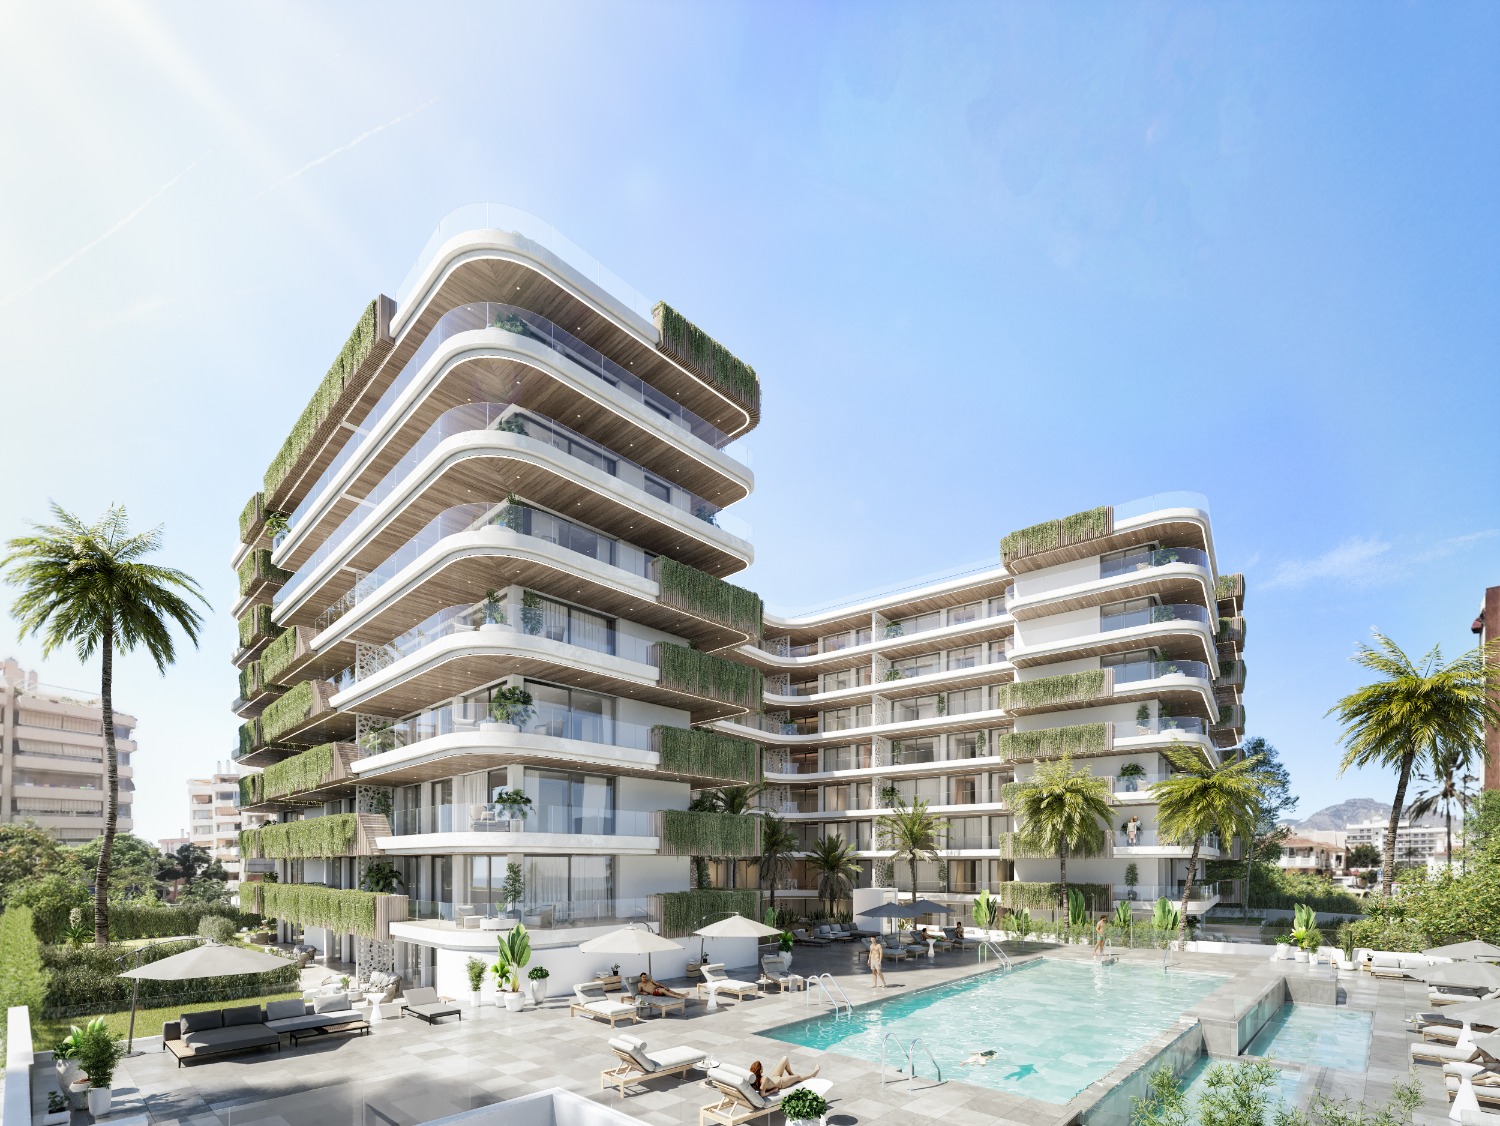 116 prachtige appartementen en luxe penthouses met garage op 100 meter van de zee.